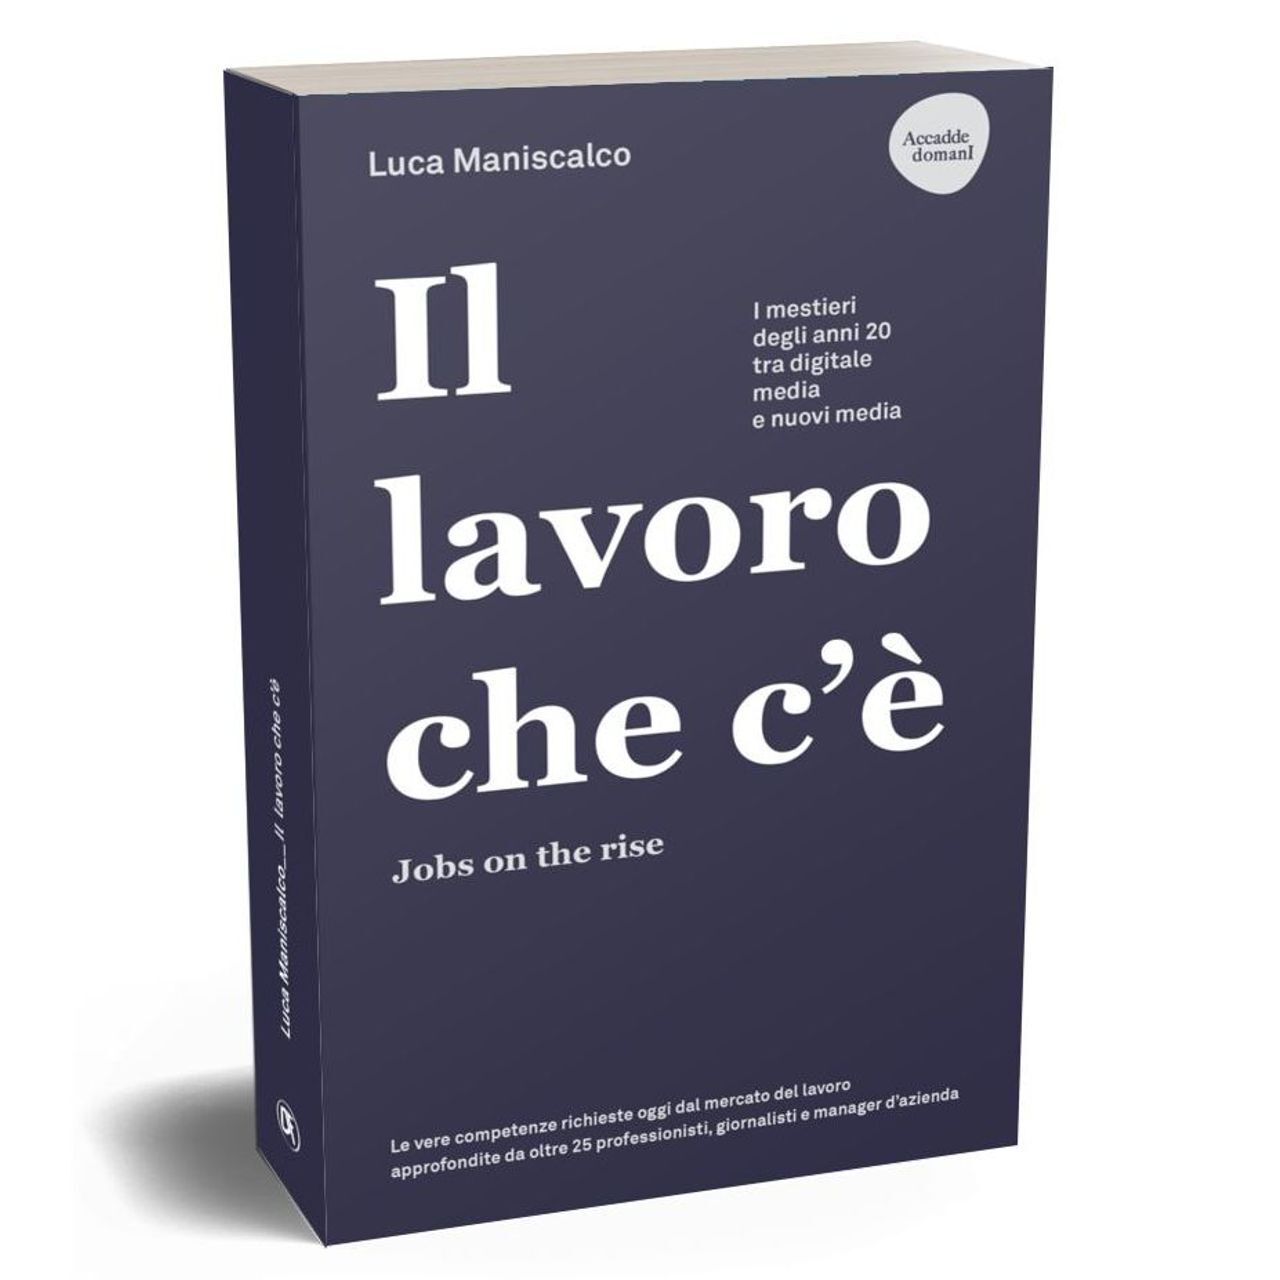 這本書的封面“存在的作品。 《就業機會的崛起》作者：Luca Maniscalco，由 Dario Flaccovio Editore 出版